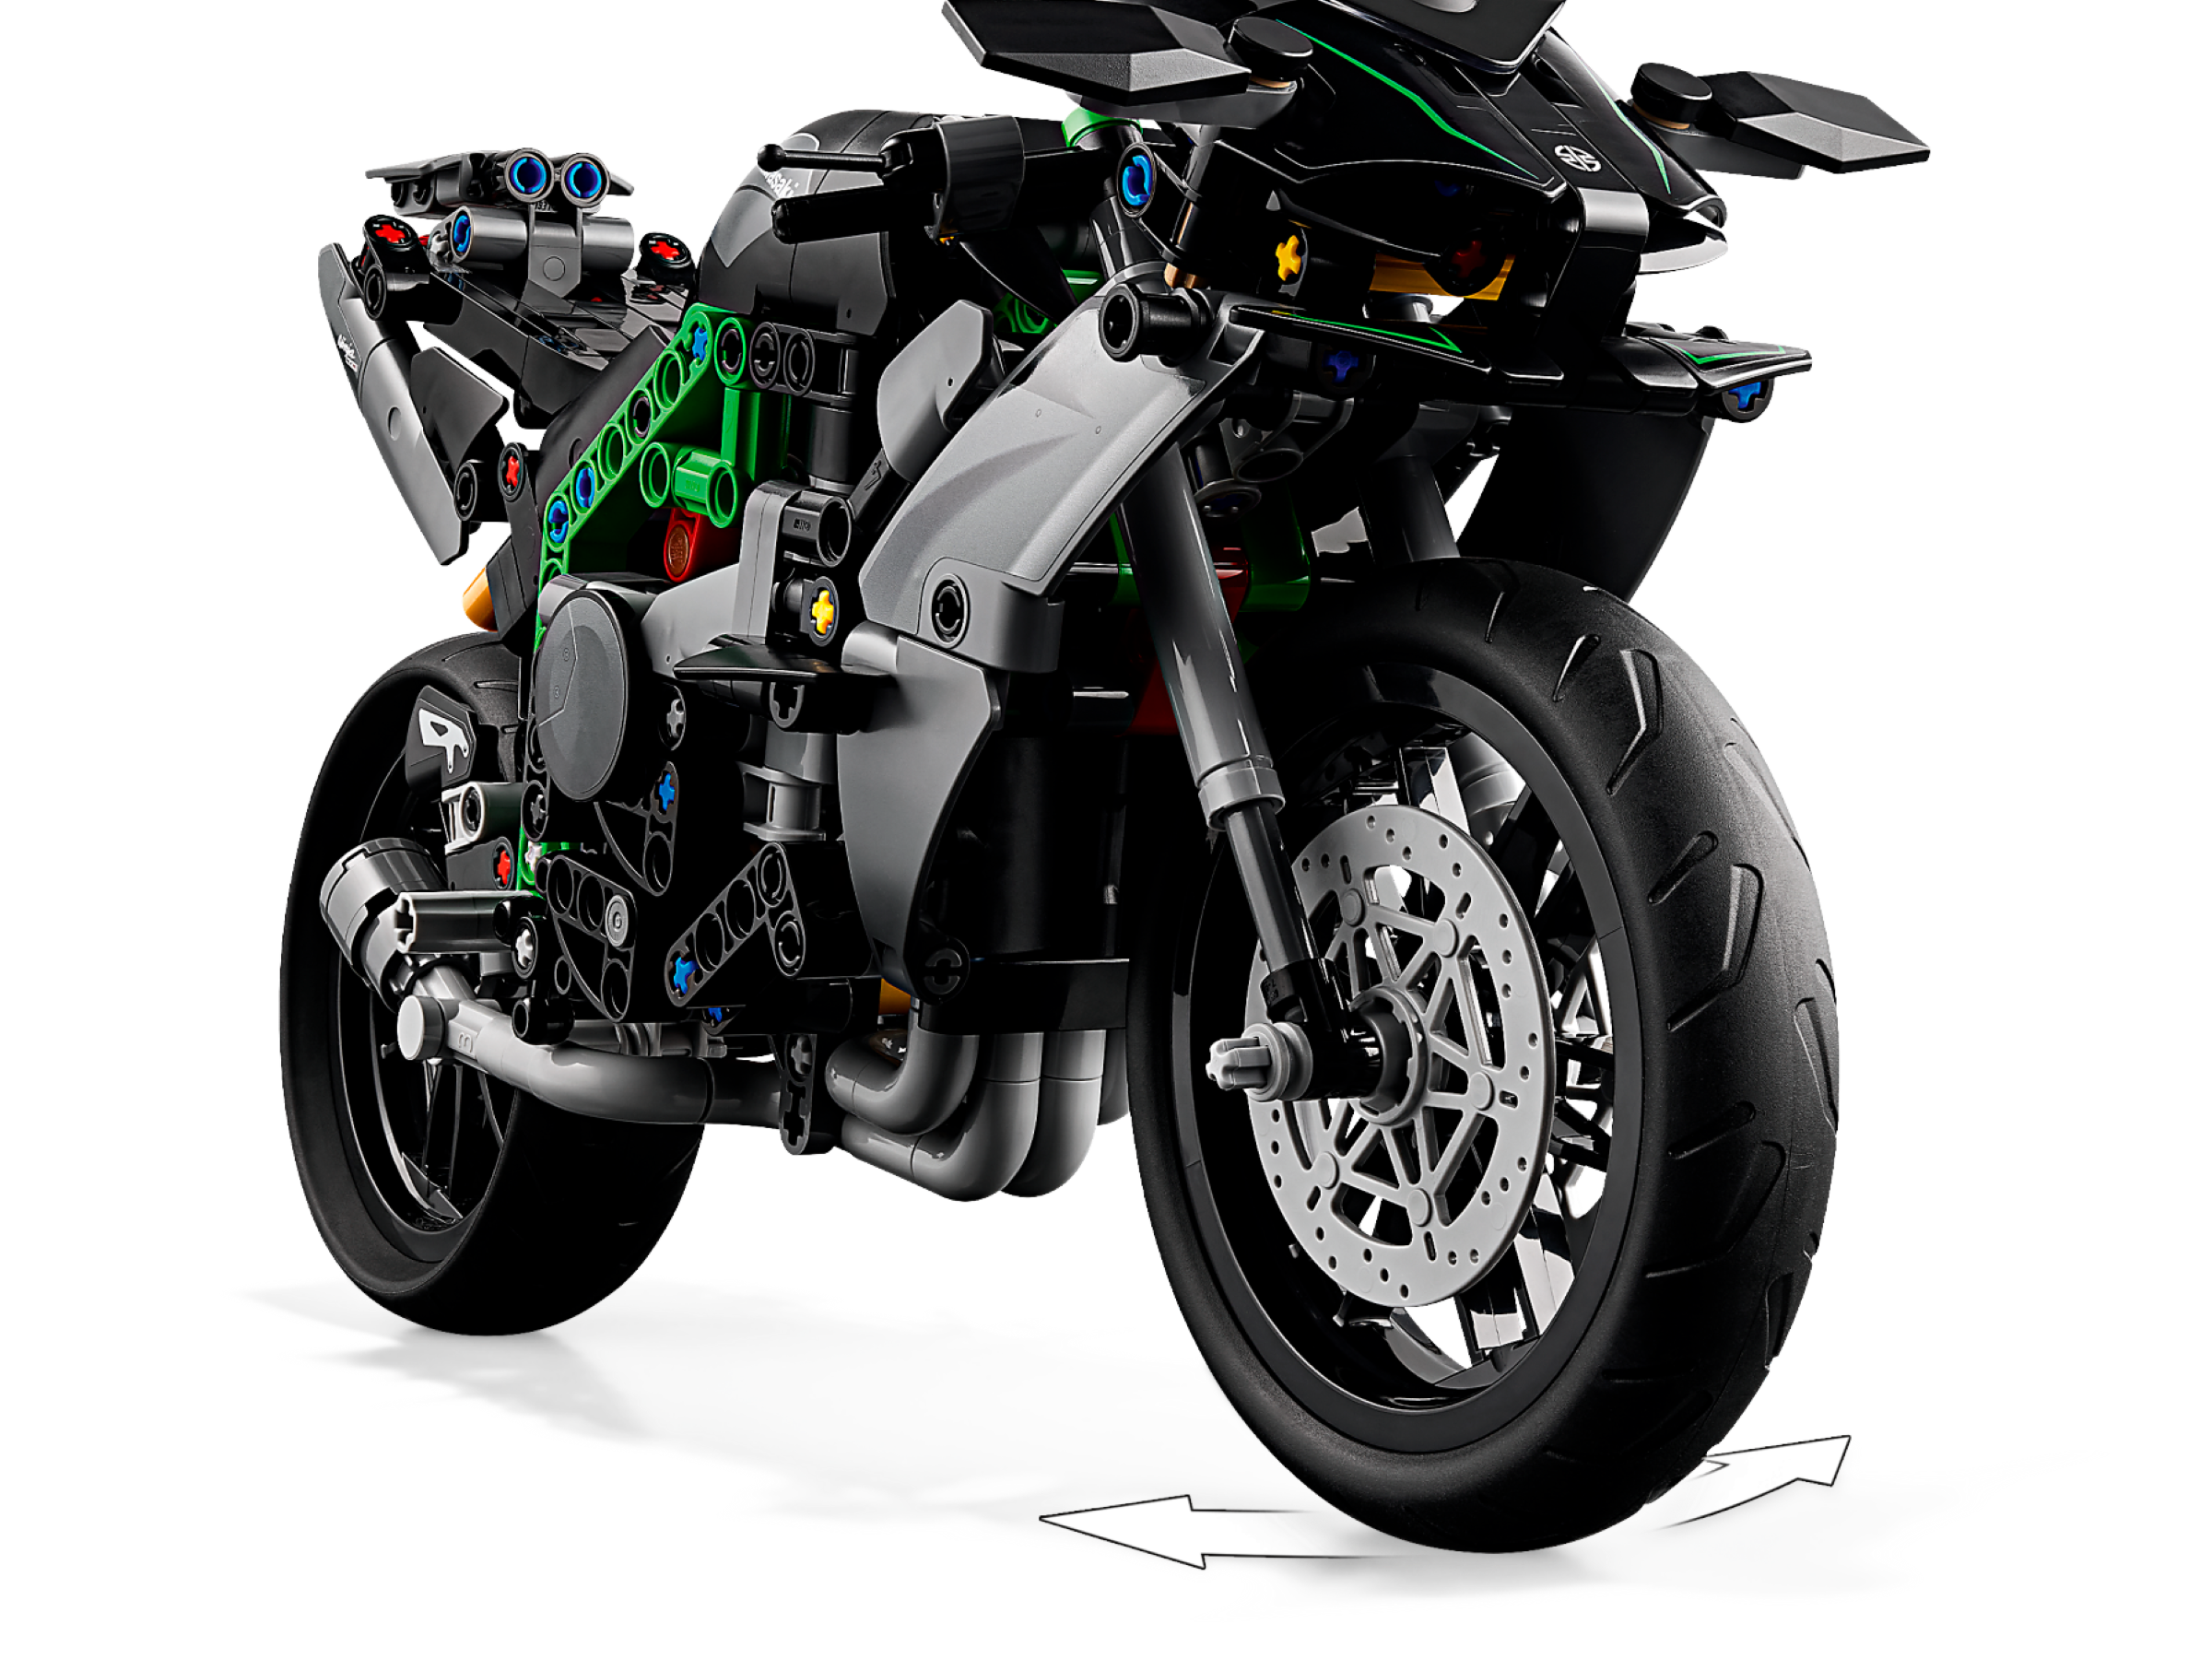 LEGO Technic 42170 Kawasaki Ninja H2 R Motorrad 42170